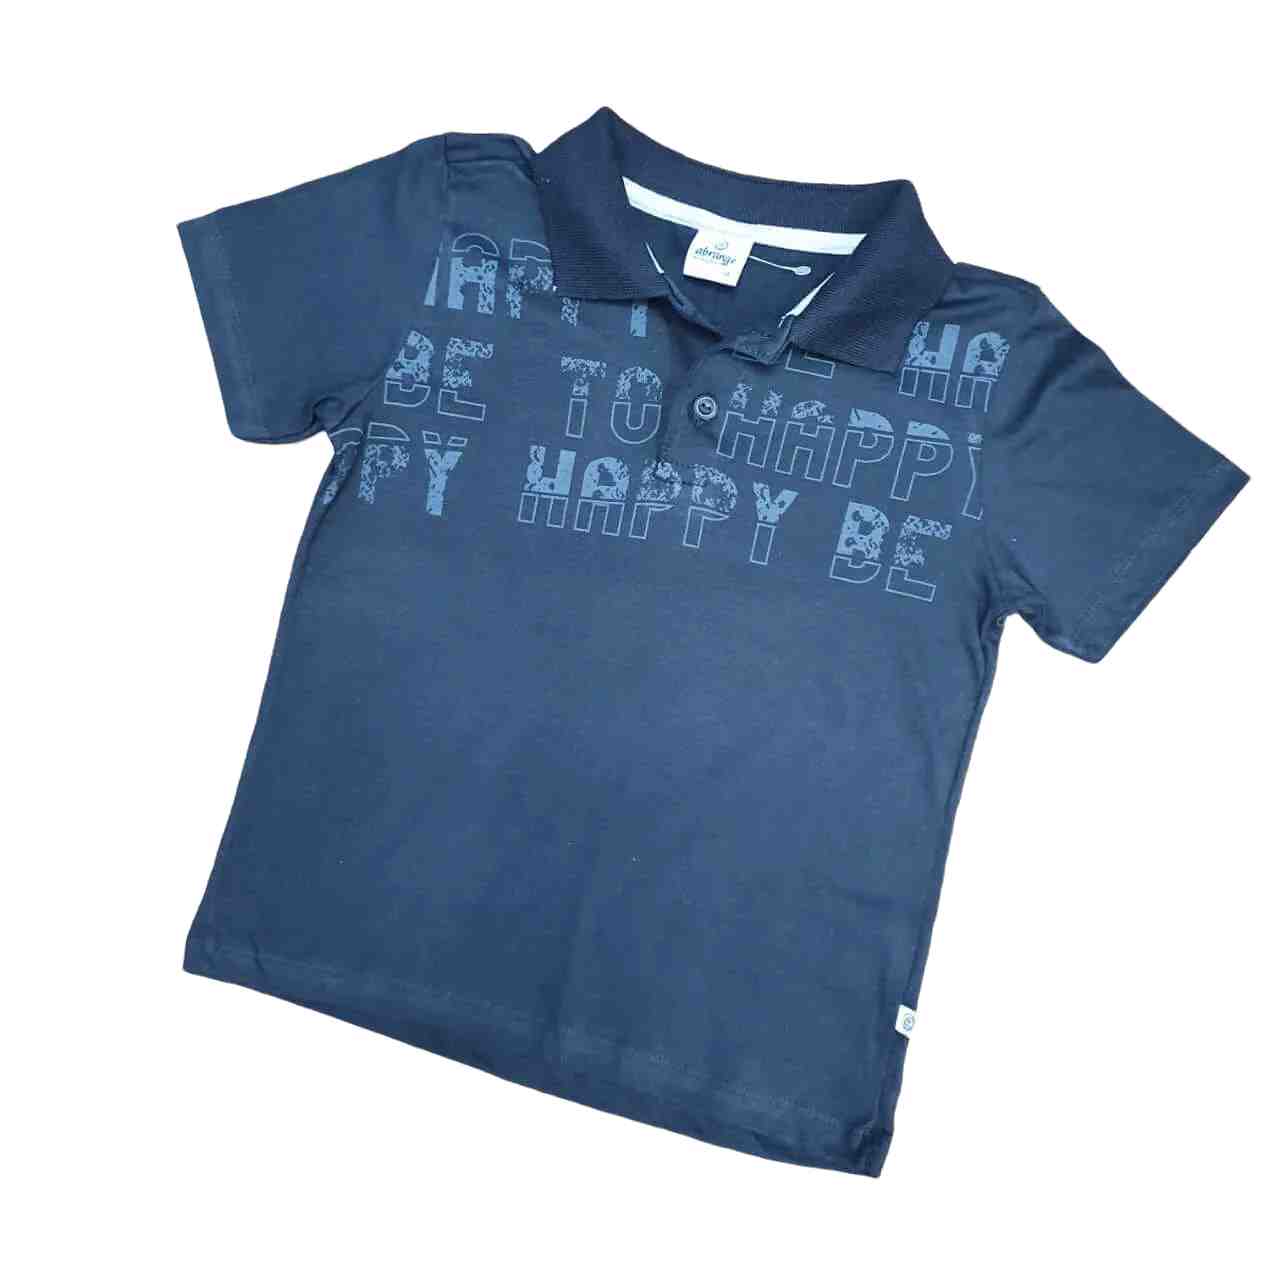 Camisa Polo Happy Infantil  - Lojinha da Vivi